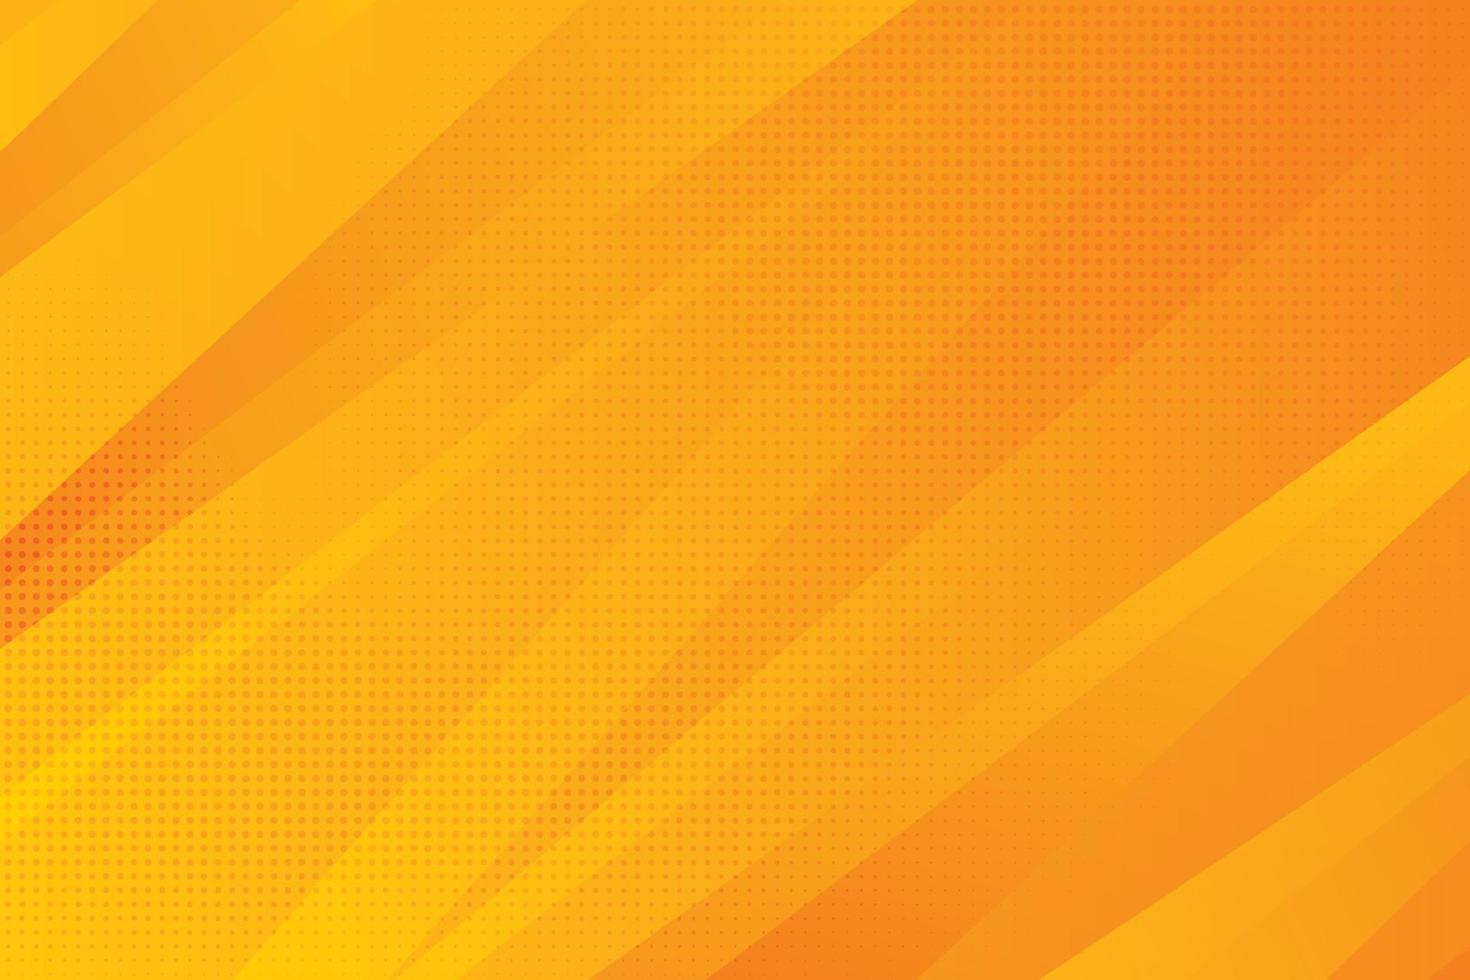 abstracte kleurovergang oranje en geel tech ontwerppatroon met halftone illustraties achtergrond. illustratie vector eps10